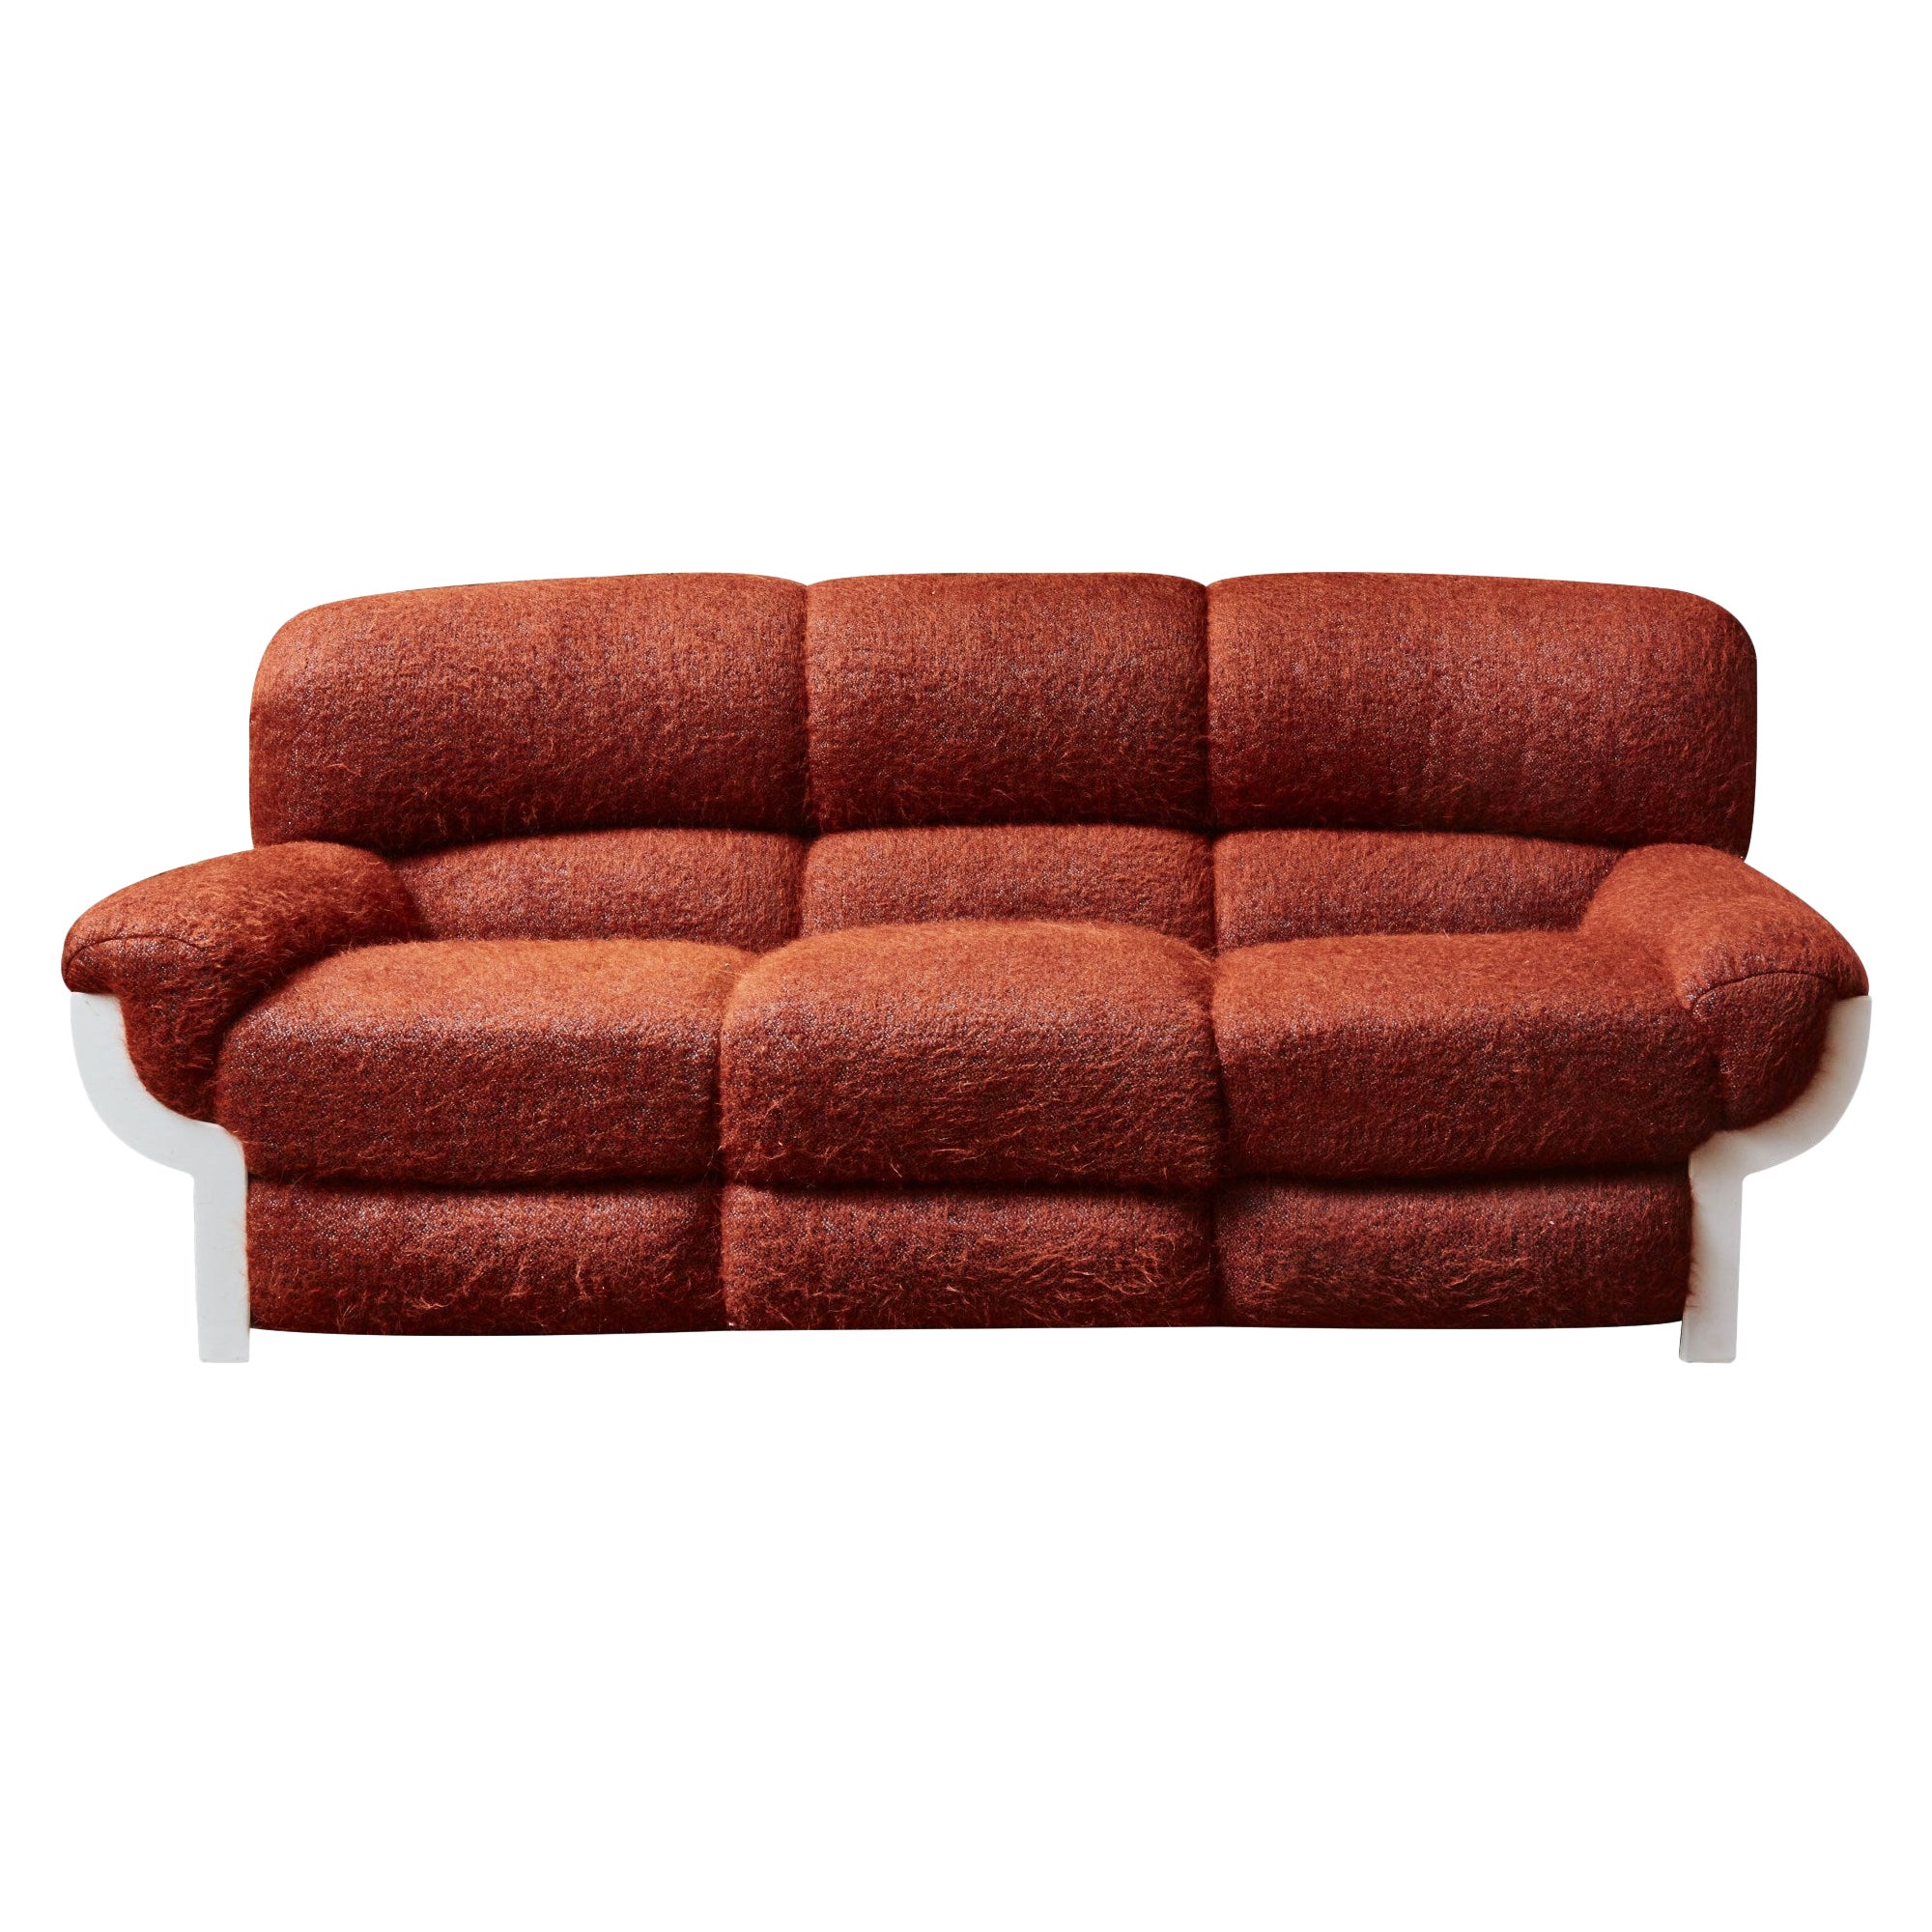 Canapé vintage au prix abordable